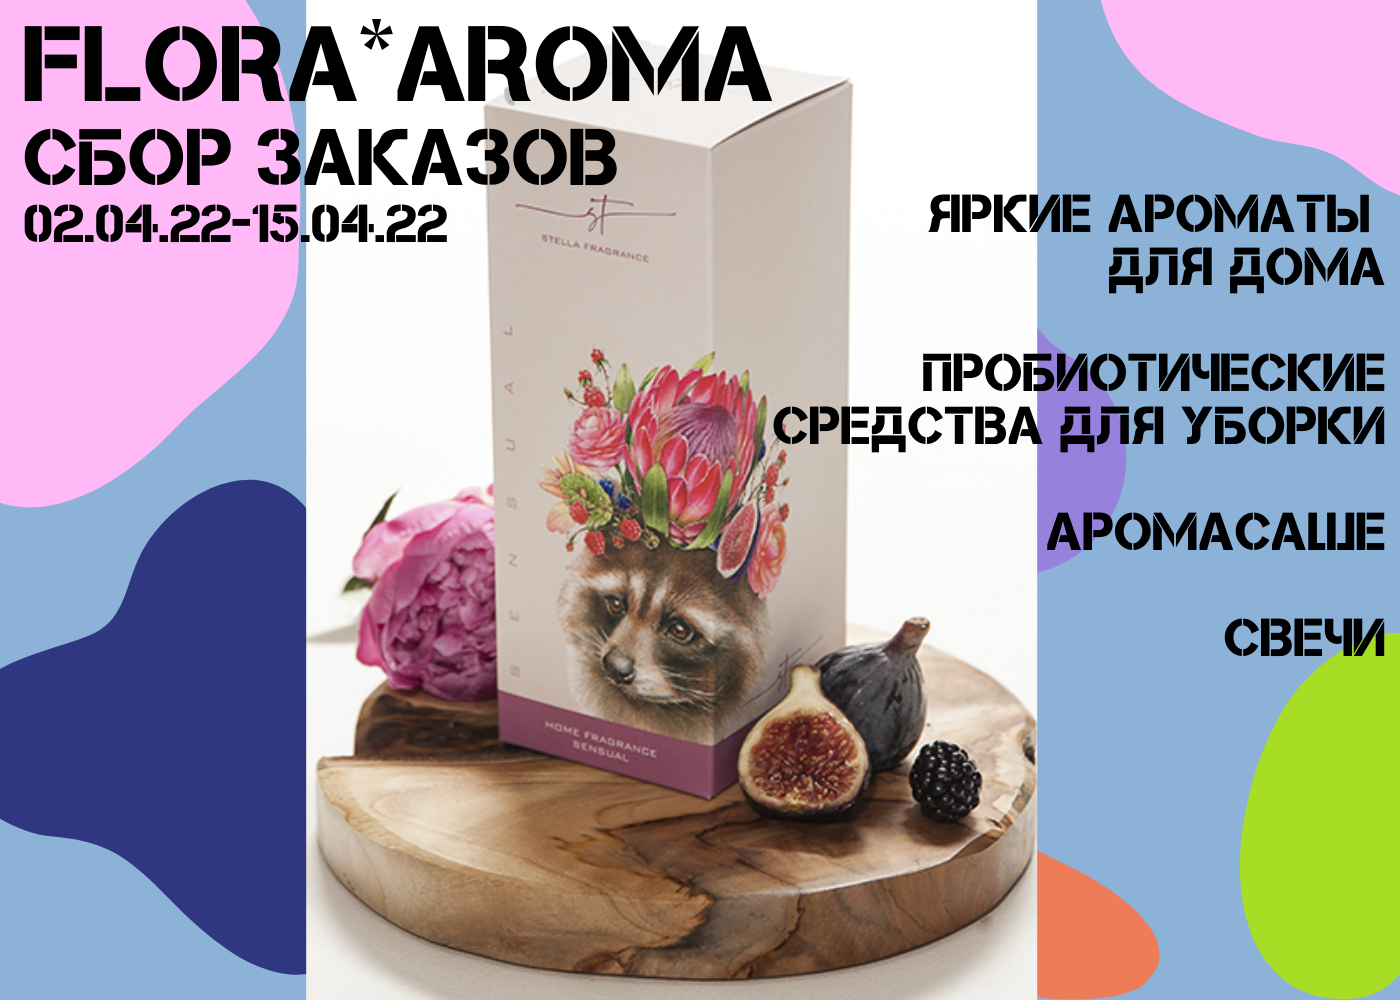 FLORA*AROMA - яркие ароматы для дома! Премиальная коллекция и пробиотические средства для уборки!